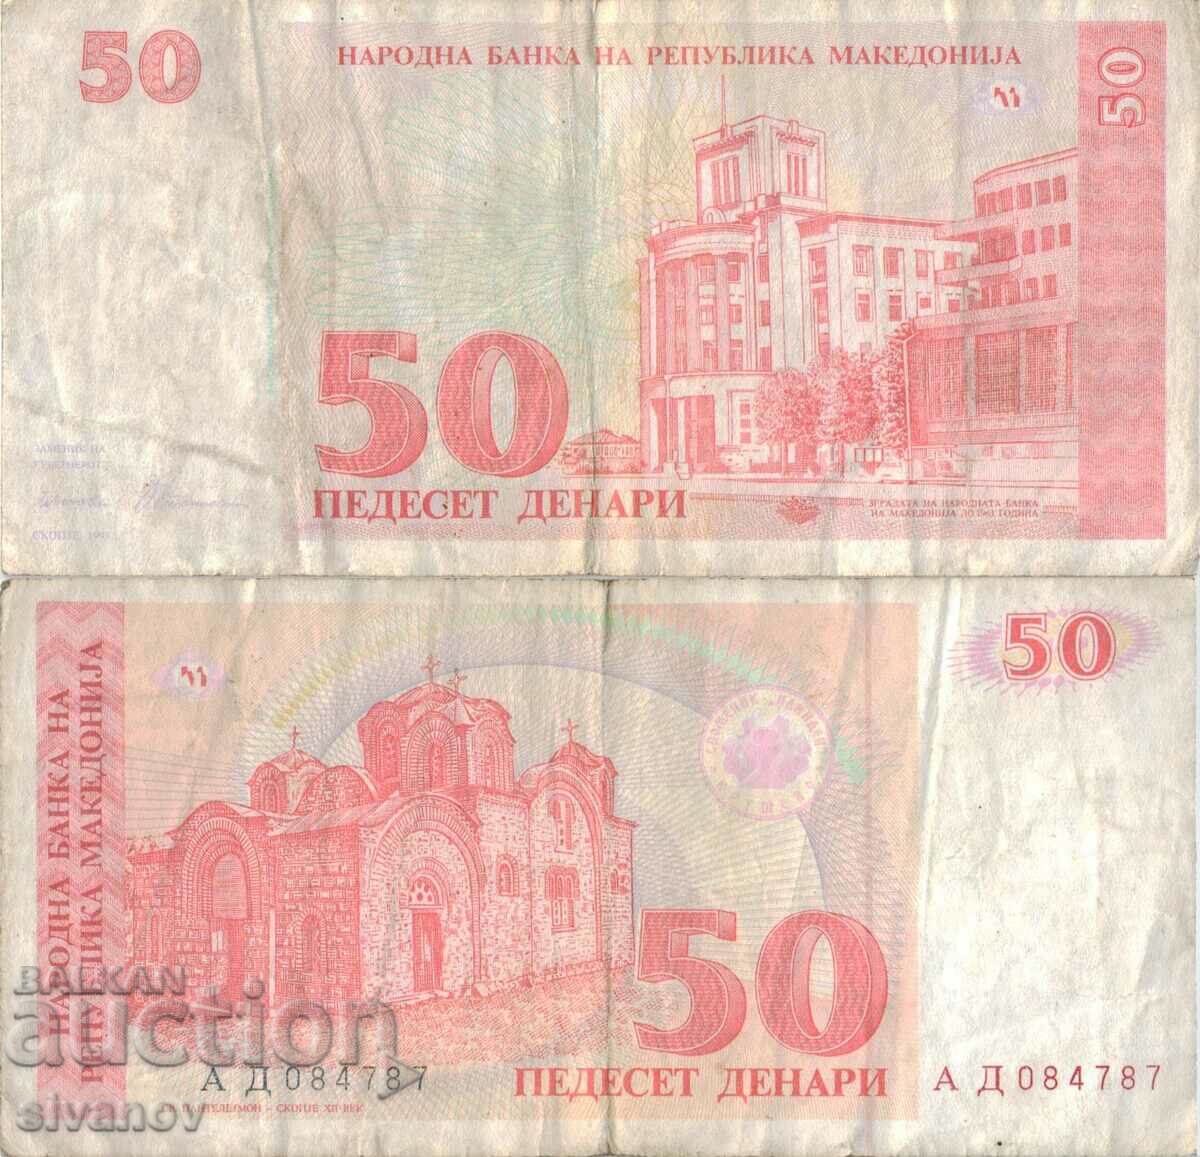 Macedonia 50 denars 1993 banknote #5219